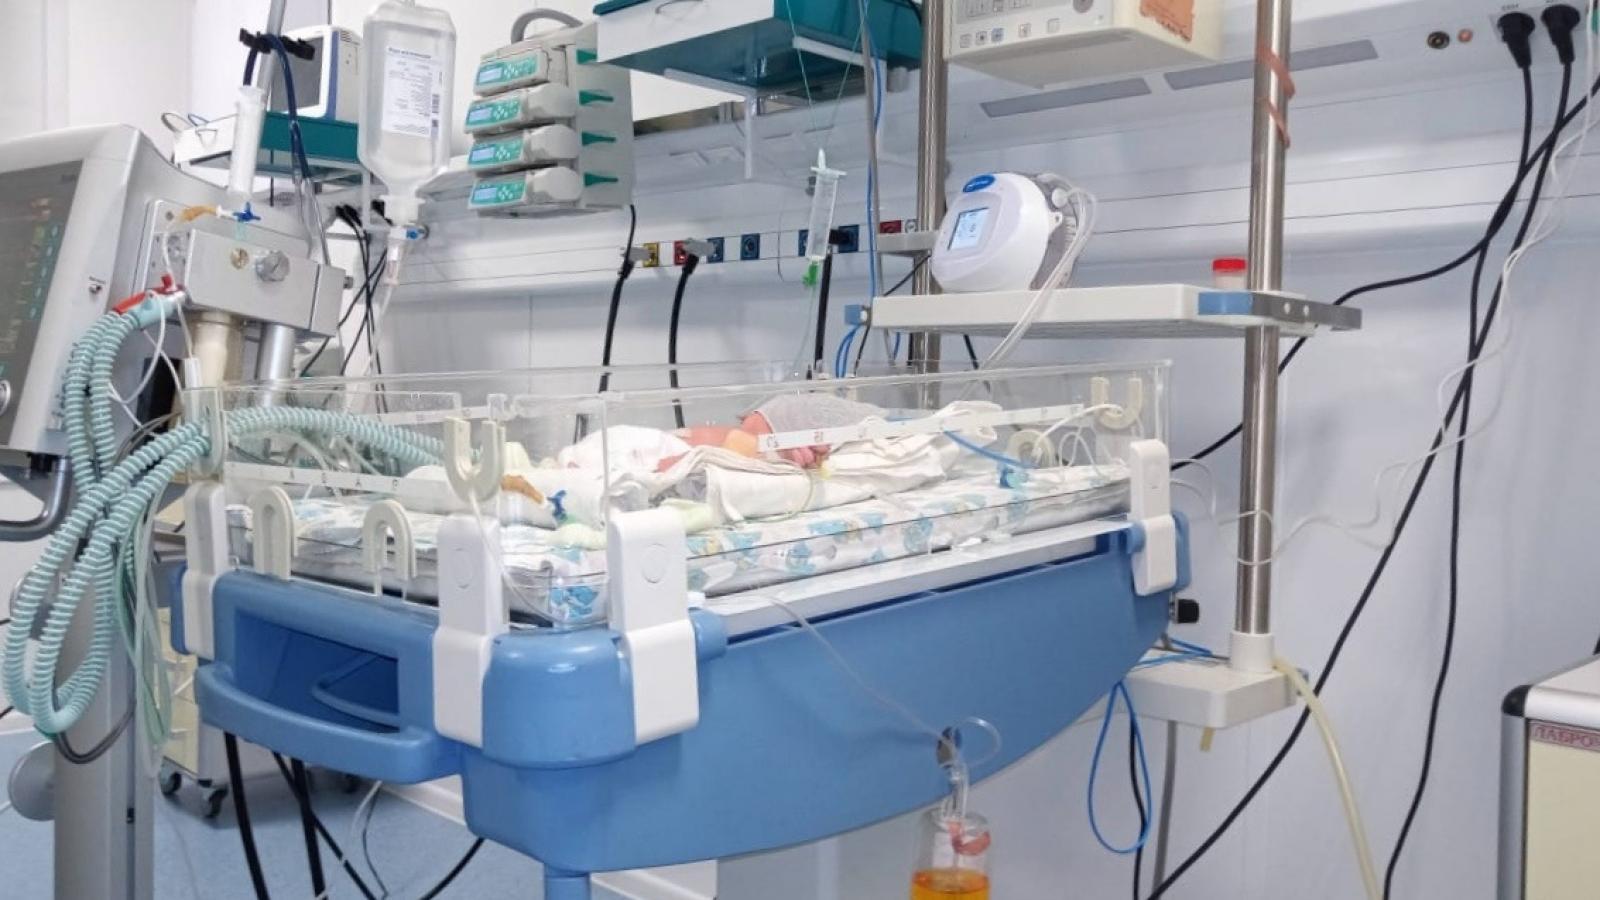 вологда детская больница отделение патологии новорожденных фото